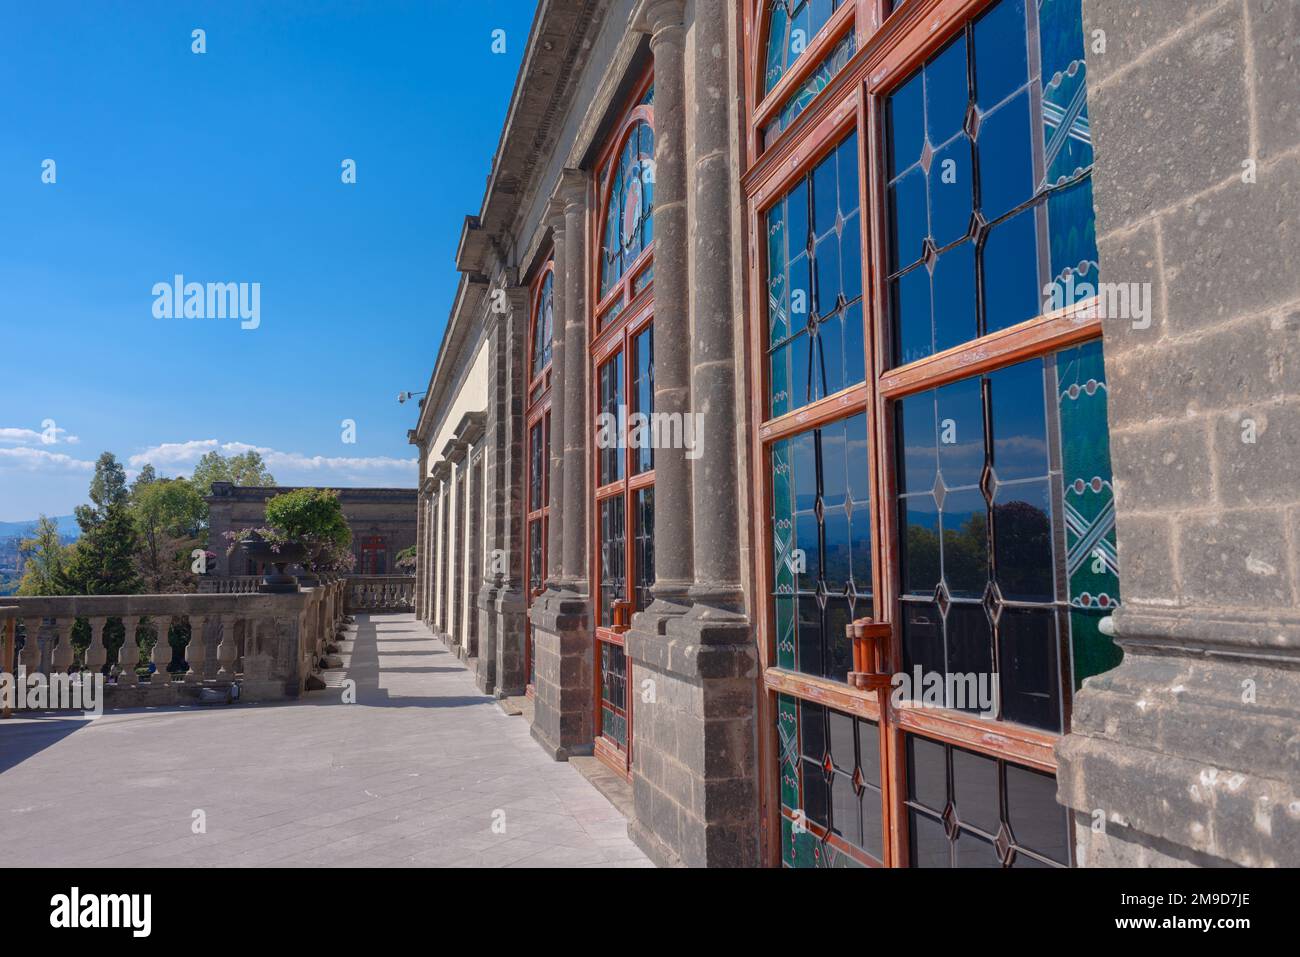 Vieille porte vitrée sur la terrasse d'un bâtiment en pierre pendant une journée d'été avec ciel bleu, pas de personnes Banque D'Images